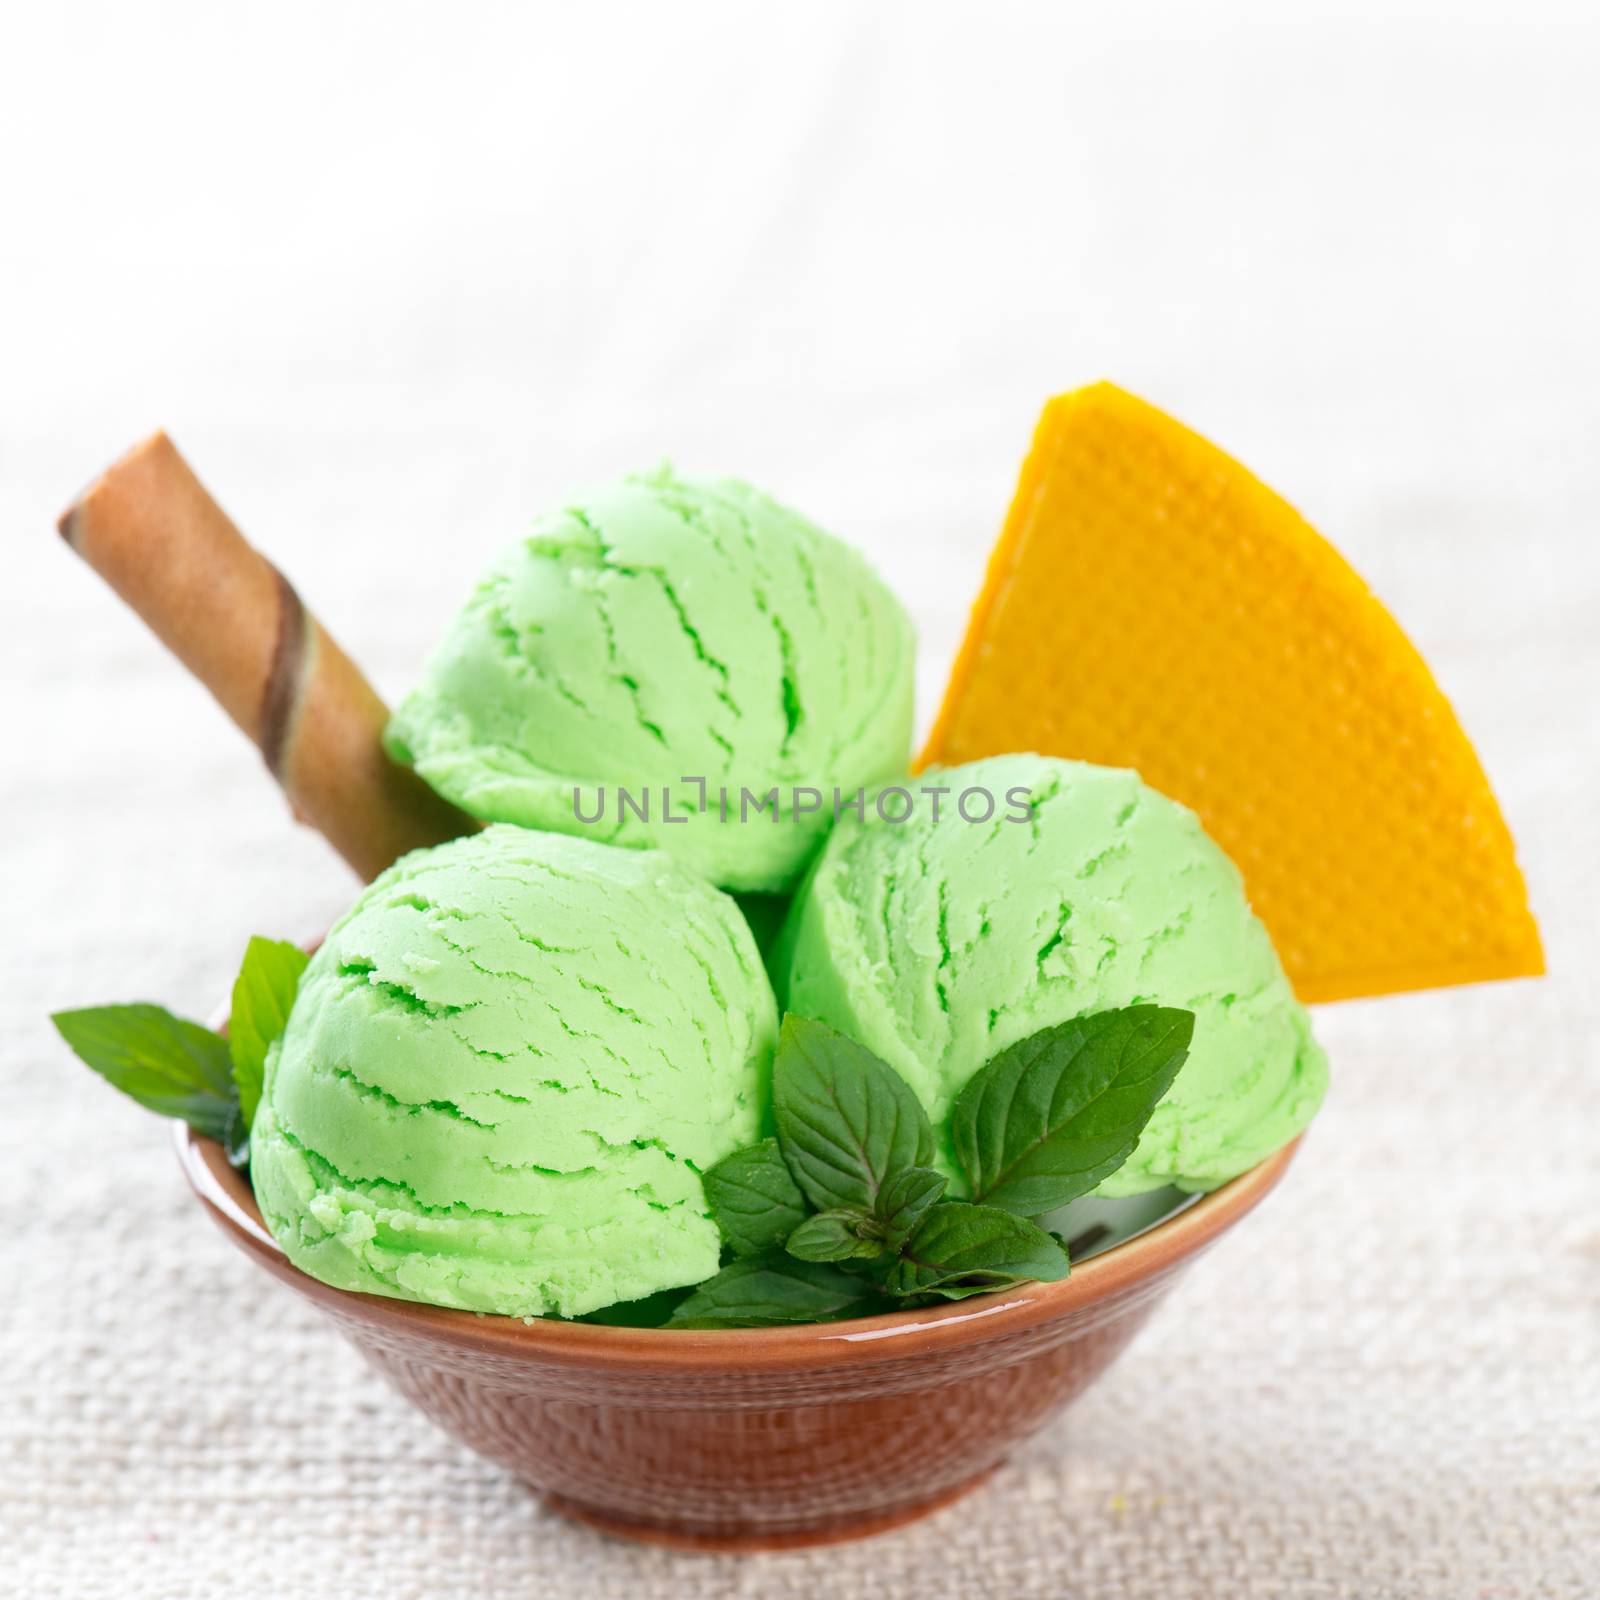 Pistachio ice cream bowl by szefei